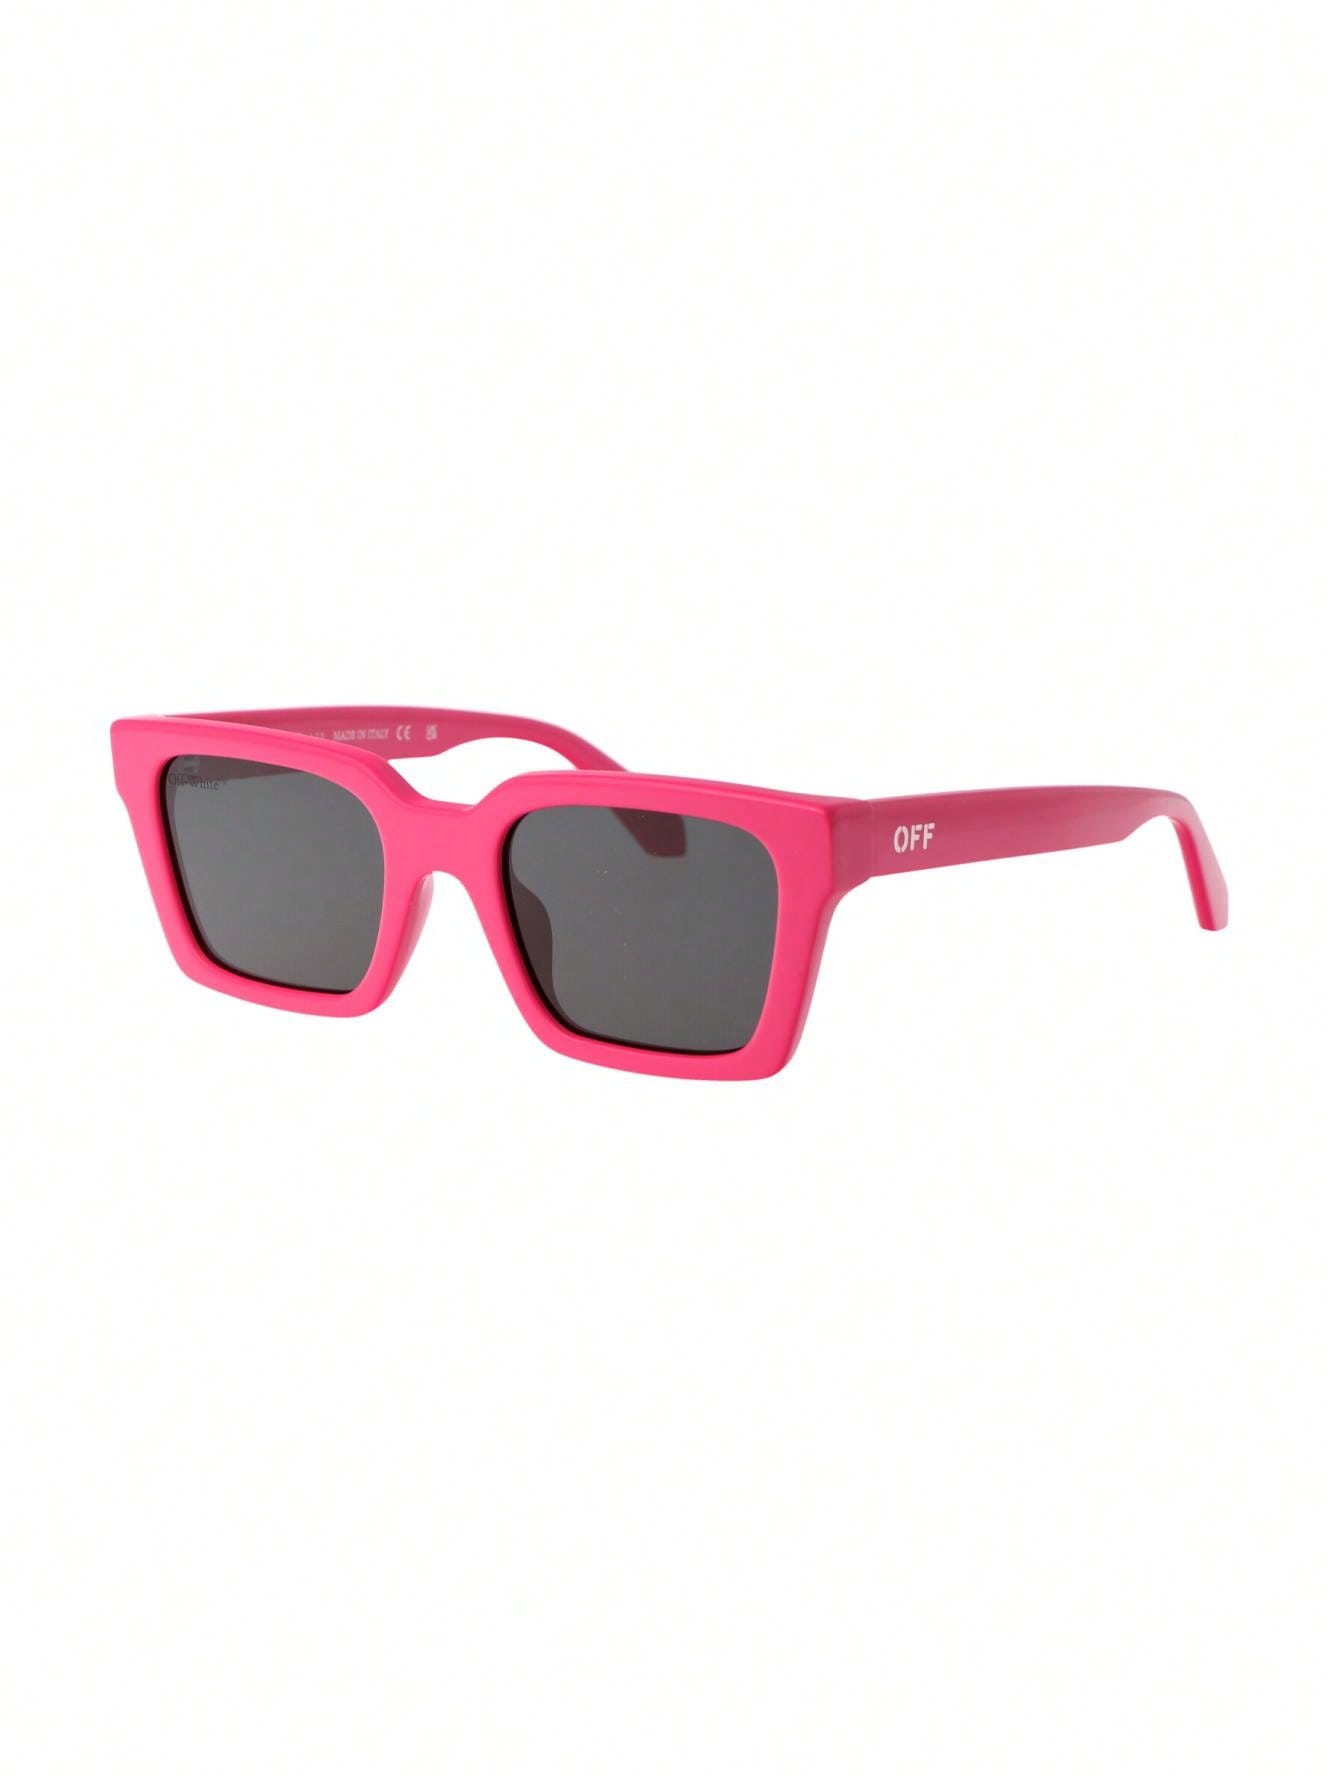 Мужские солнцезащитные очки Off-White РОЗОВЫЕ OERI086F23PLA0013207, розовый